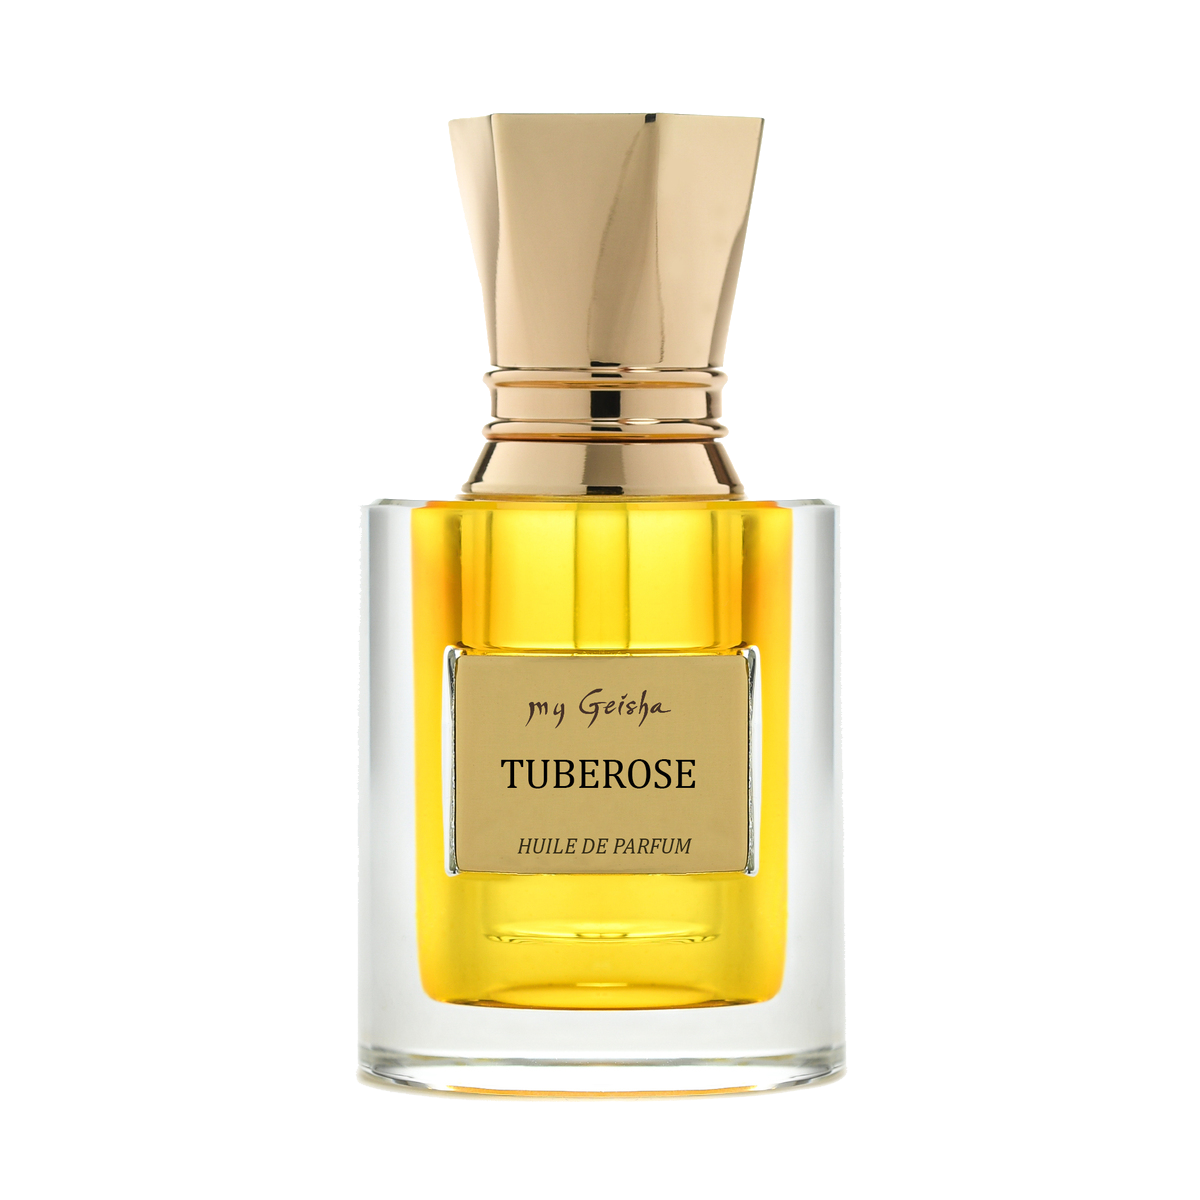 Huile de parfum TUBEROSE 14 ml, produit artisanal en vente directe en Suisse